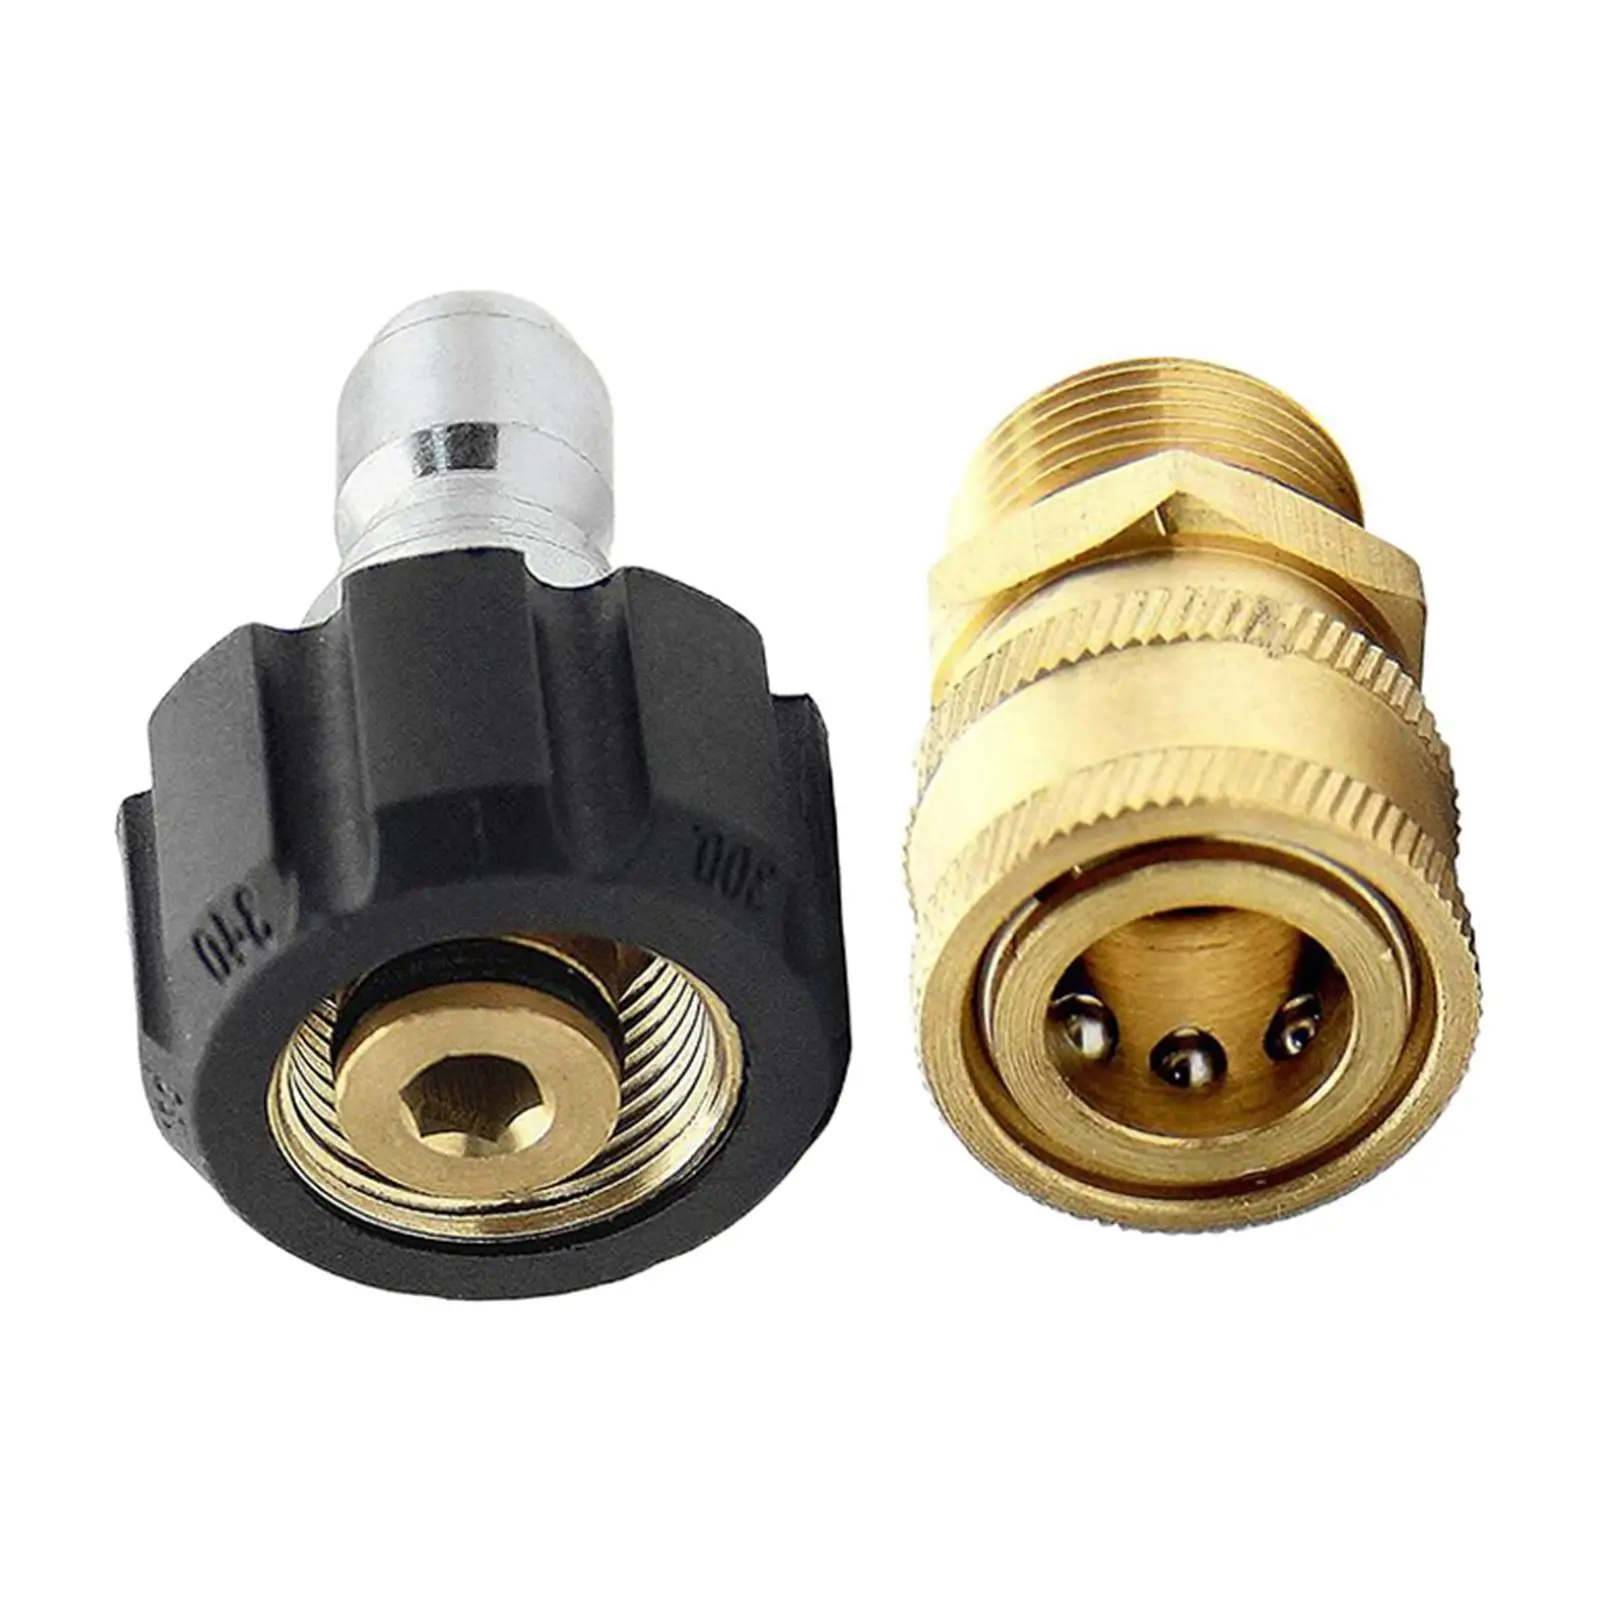 Pressure Washer Adapter Kit M22 to 3/8 inch Quick Connect and Disconnect for High Pressure Washer Gun Spray Gun Accessories